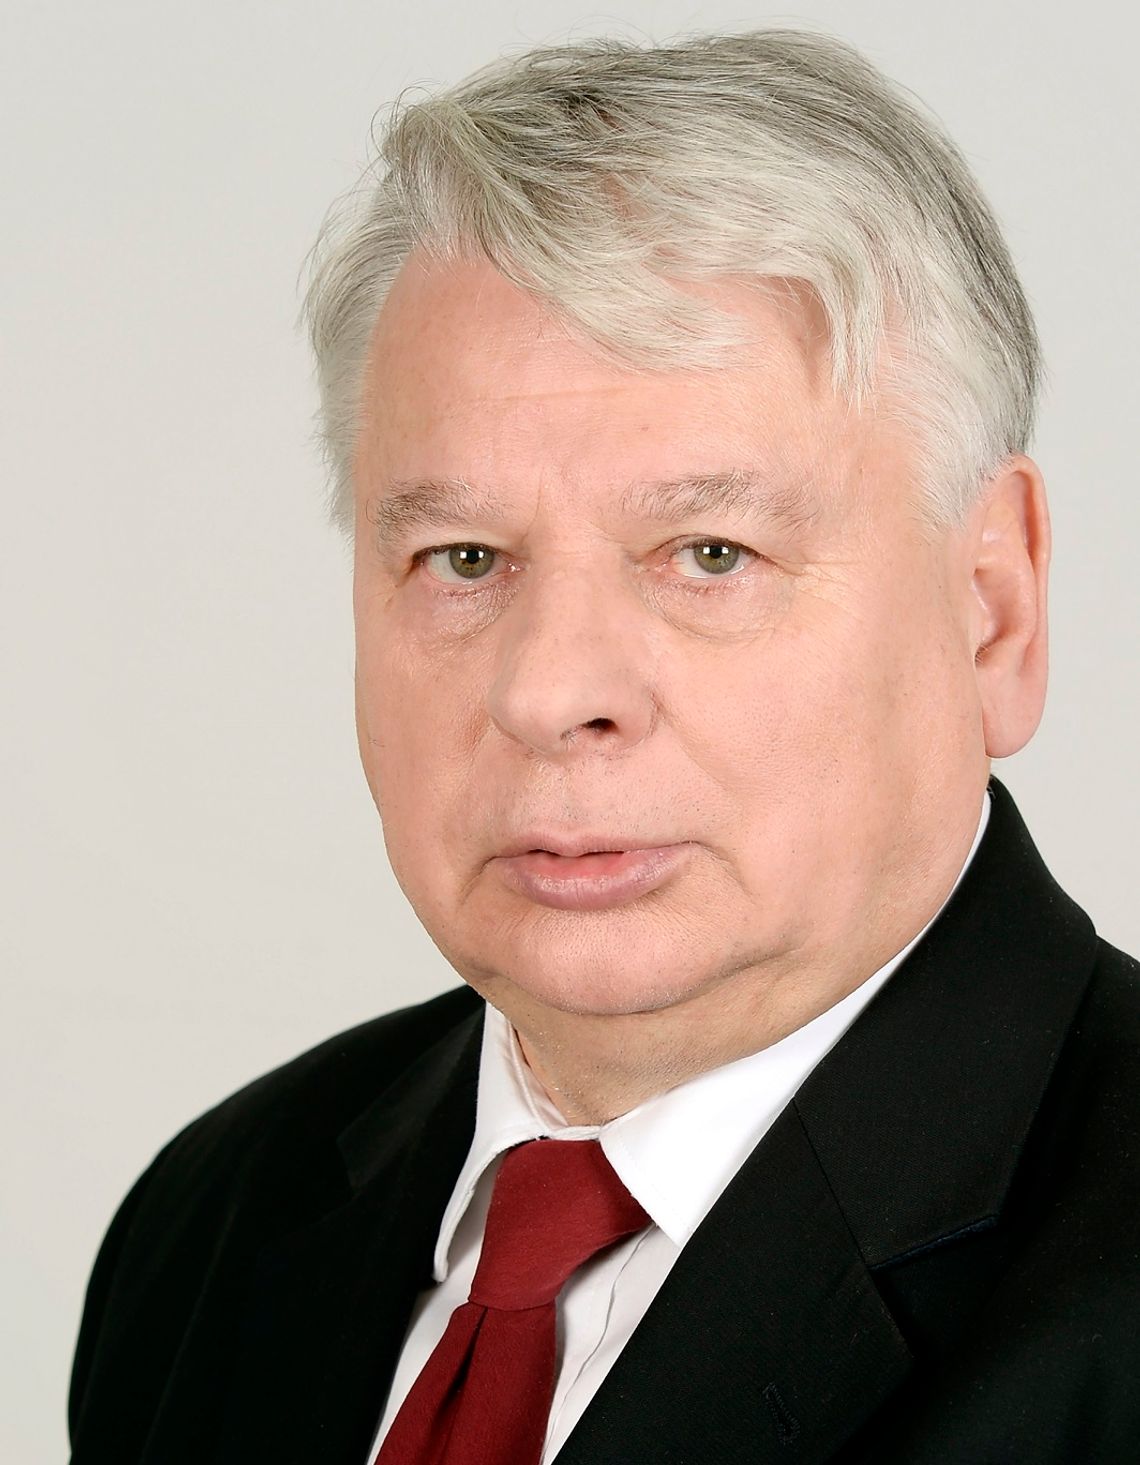 Bogdan Borusewicz w Zamościu. Spotkanie otwarte dla mieszkańców